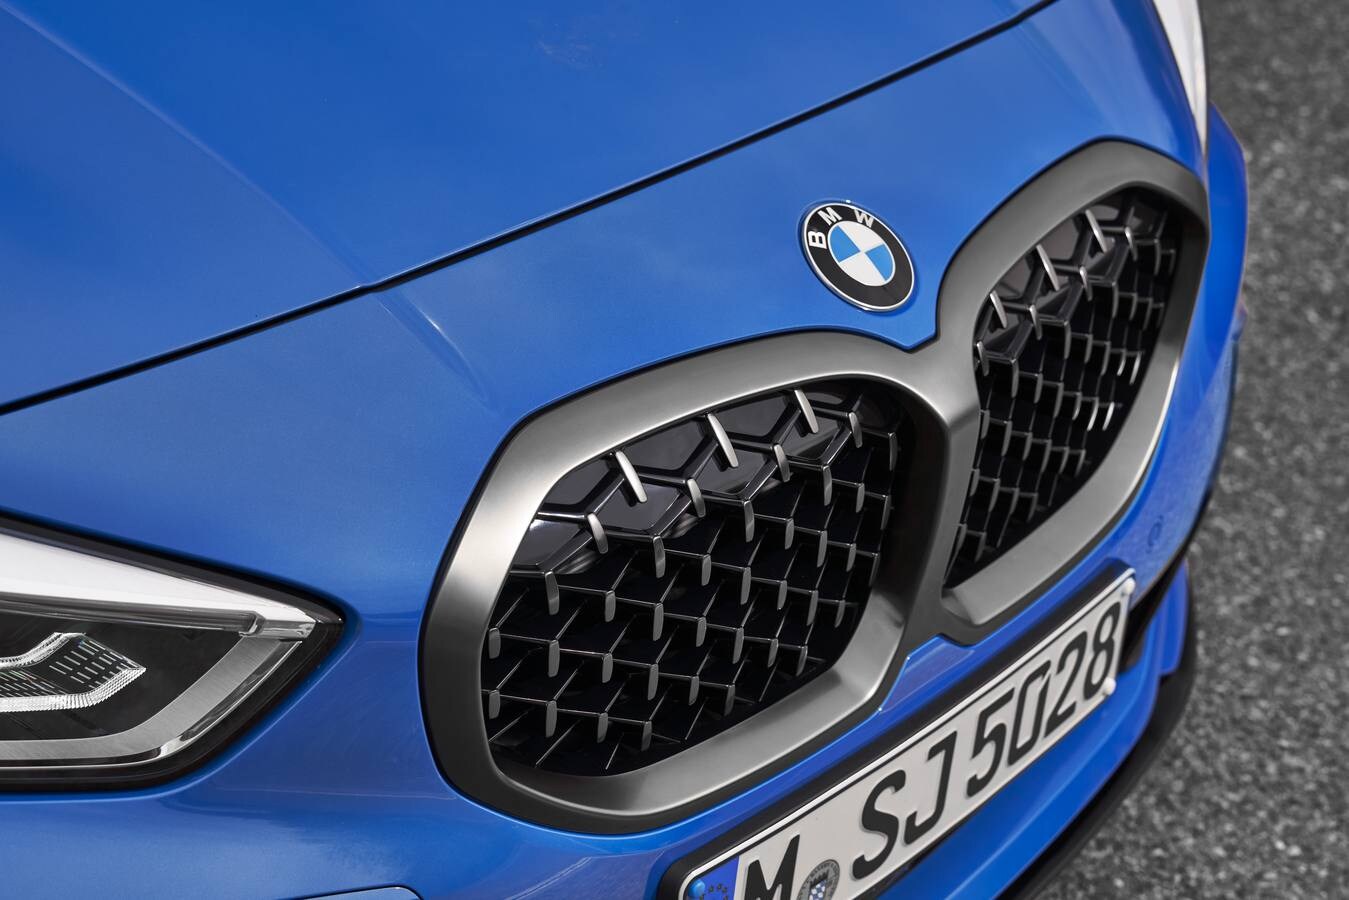 BMW empezará a vender el nuevo Serie 1 en octubre. Se trata de la tercera generación del compacto germano, ahora con tracción delantera lo que permite mayor capacidad interior y más volumen de maletero.